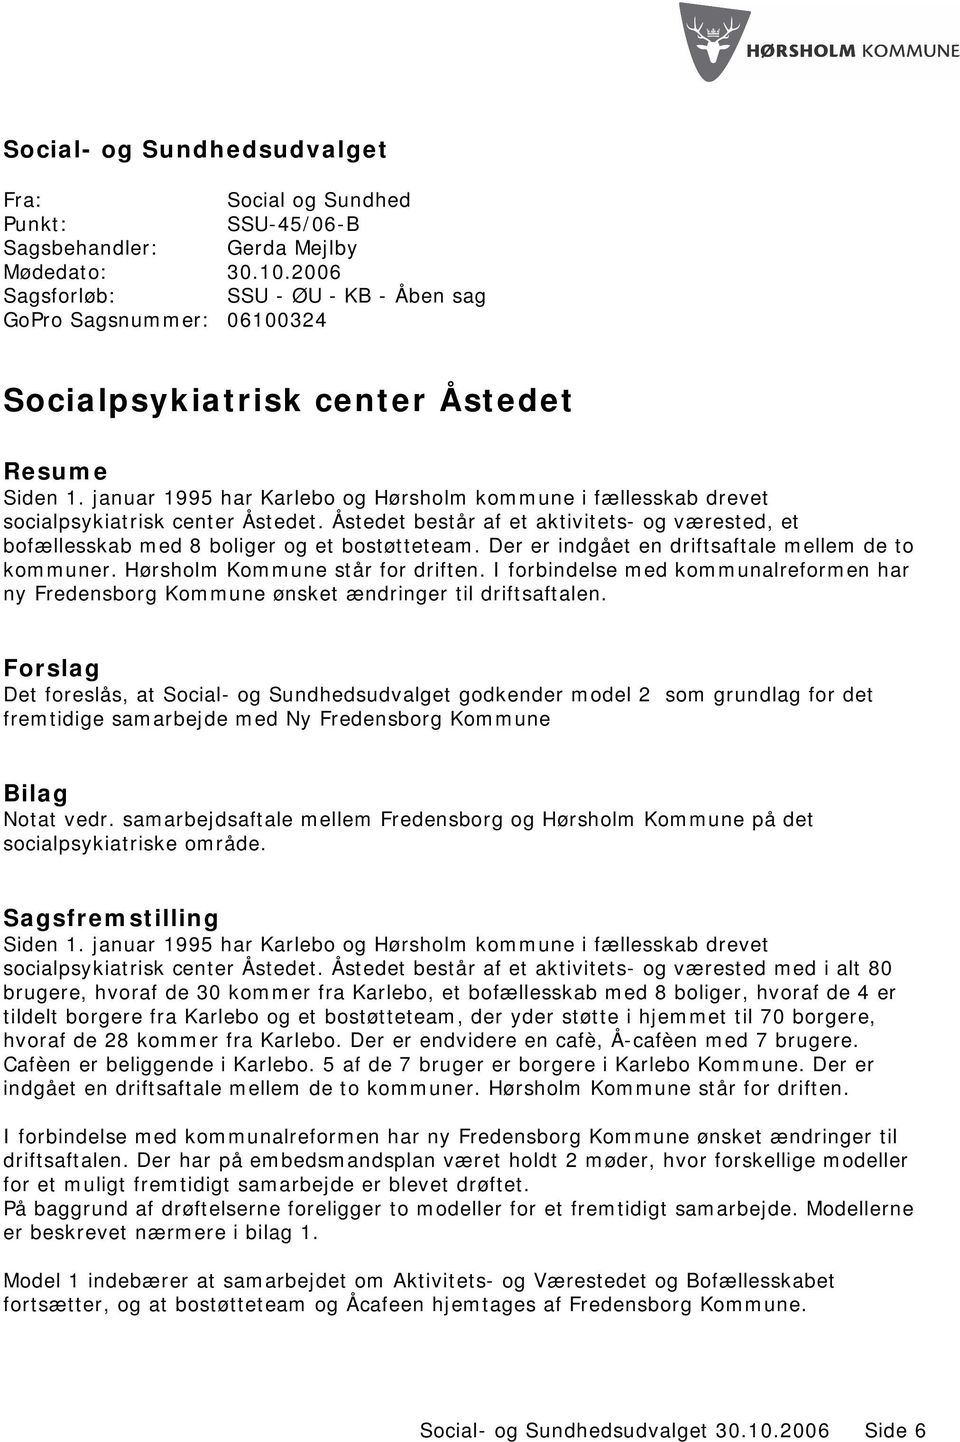 januar 1995 har Karlebo og Hørsholm kommune i fællesskab drevet socialpsykiatrisk center Åstedet. Åstedet består af et aktivitets- og værested, et bofællesskab med 8 boliger og et bostøtteteam.